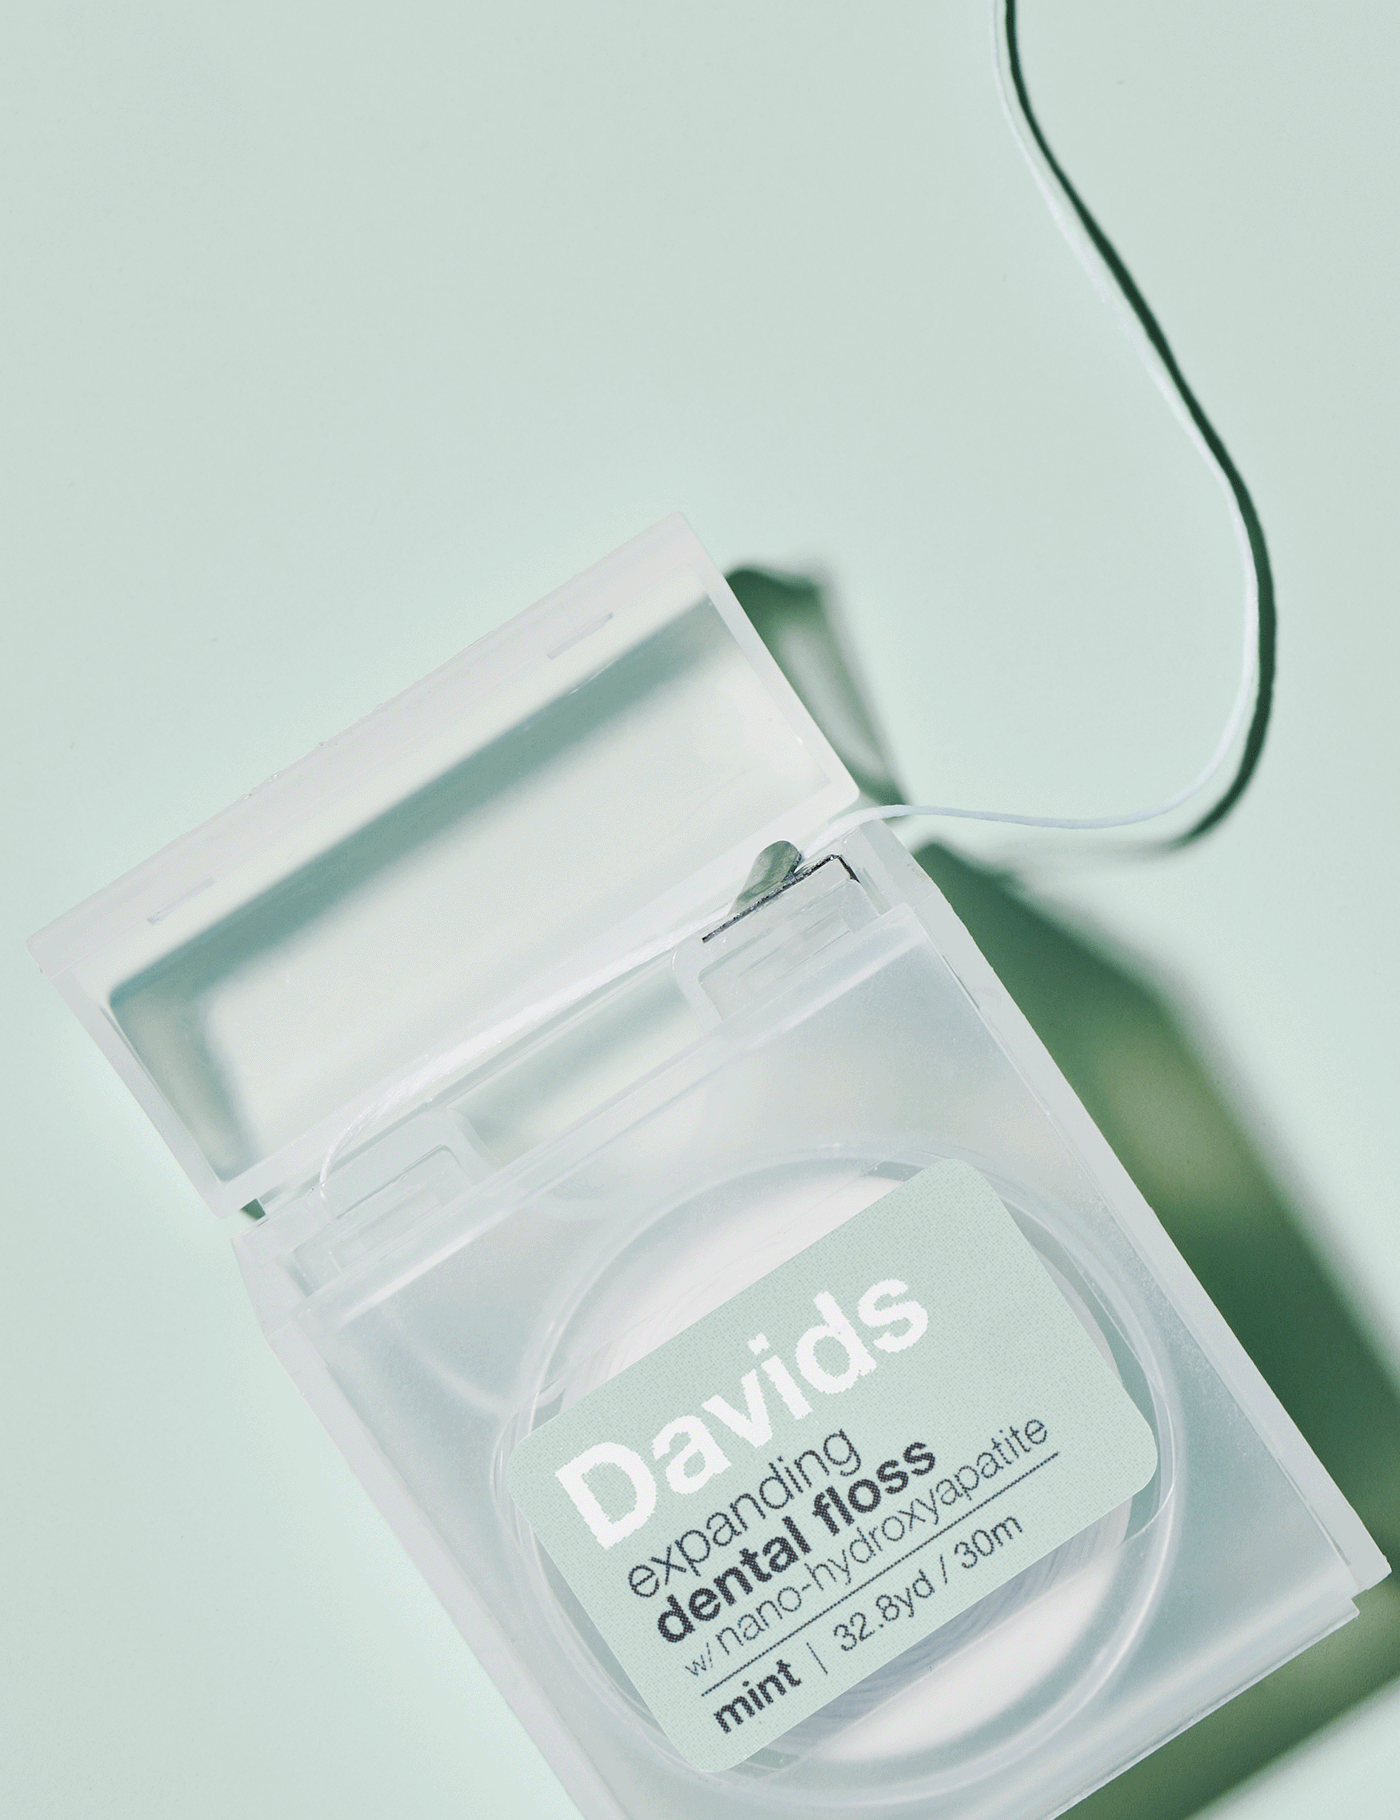 Davids expanding dental floss / refillable dispenser + refill / mint / 60m